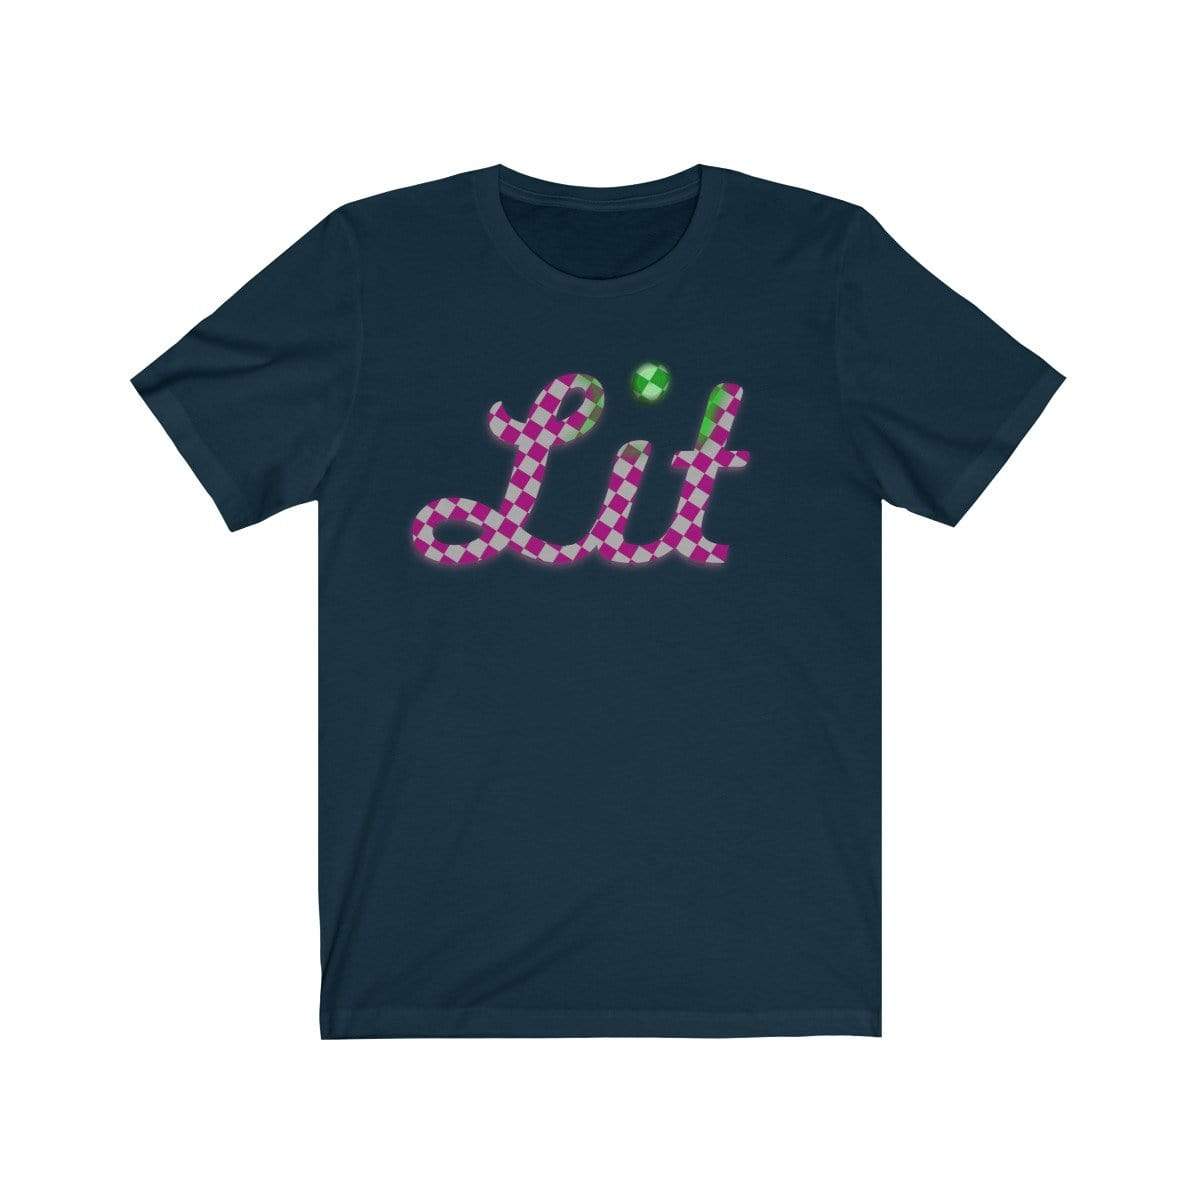 Plumskum T-Shirt Navy / S Pink Checkered Lit T-shirt